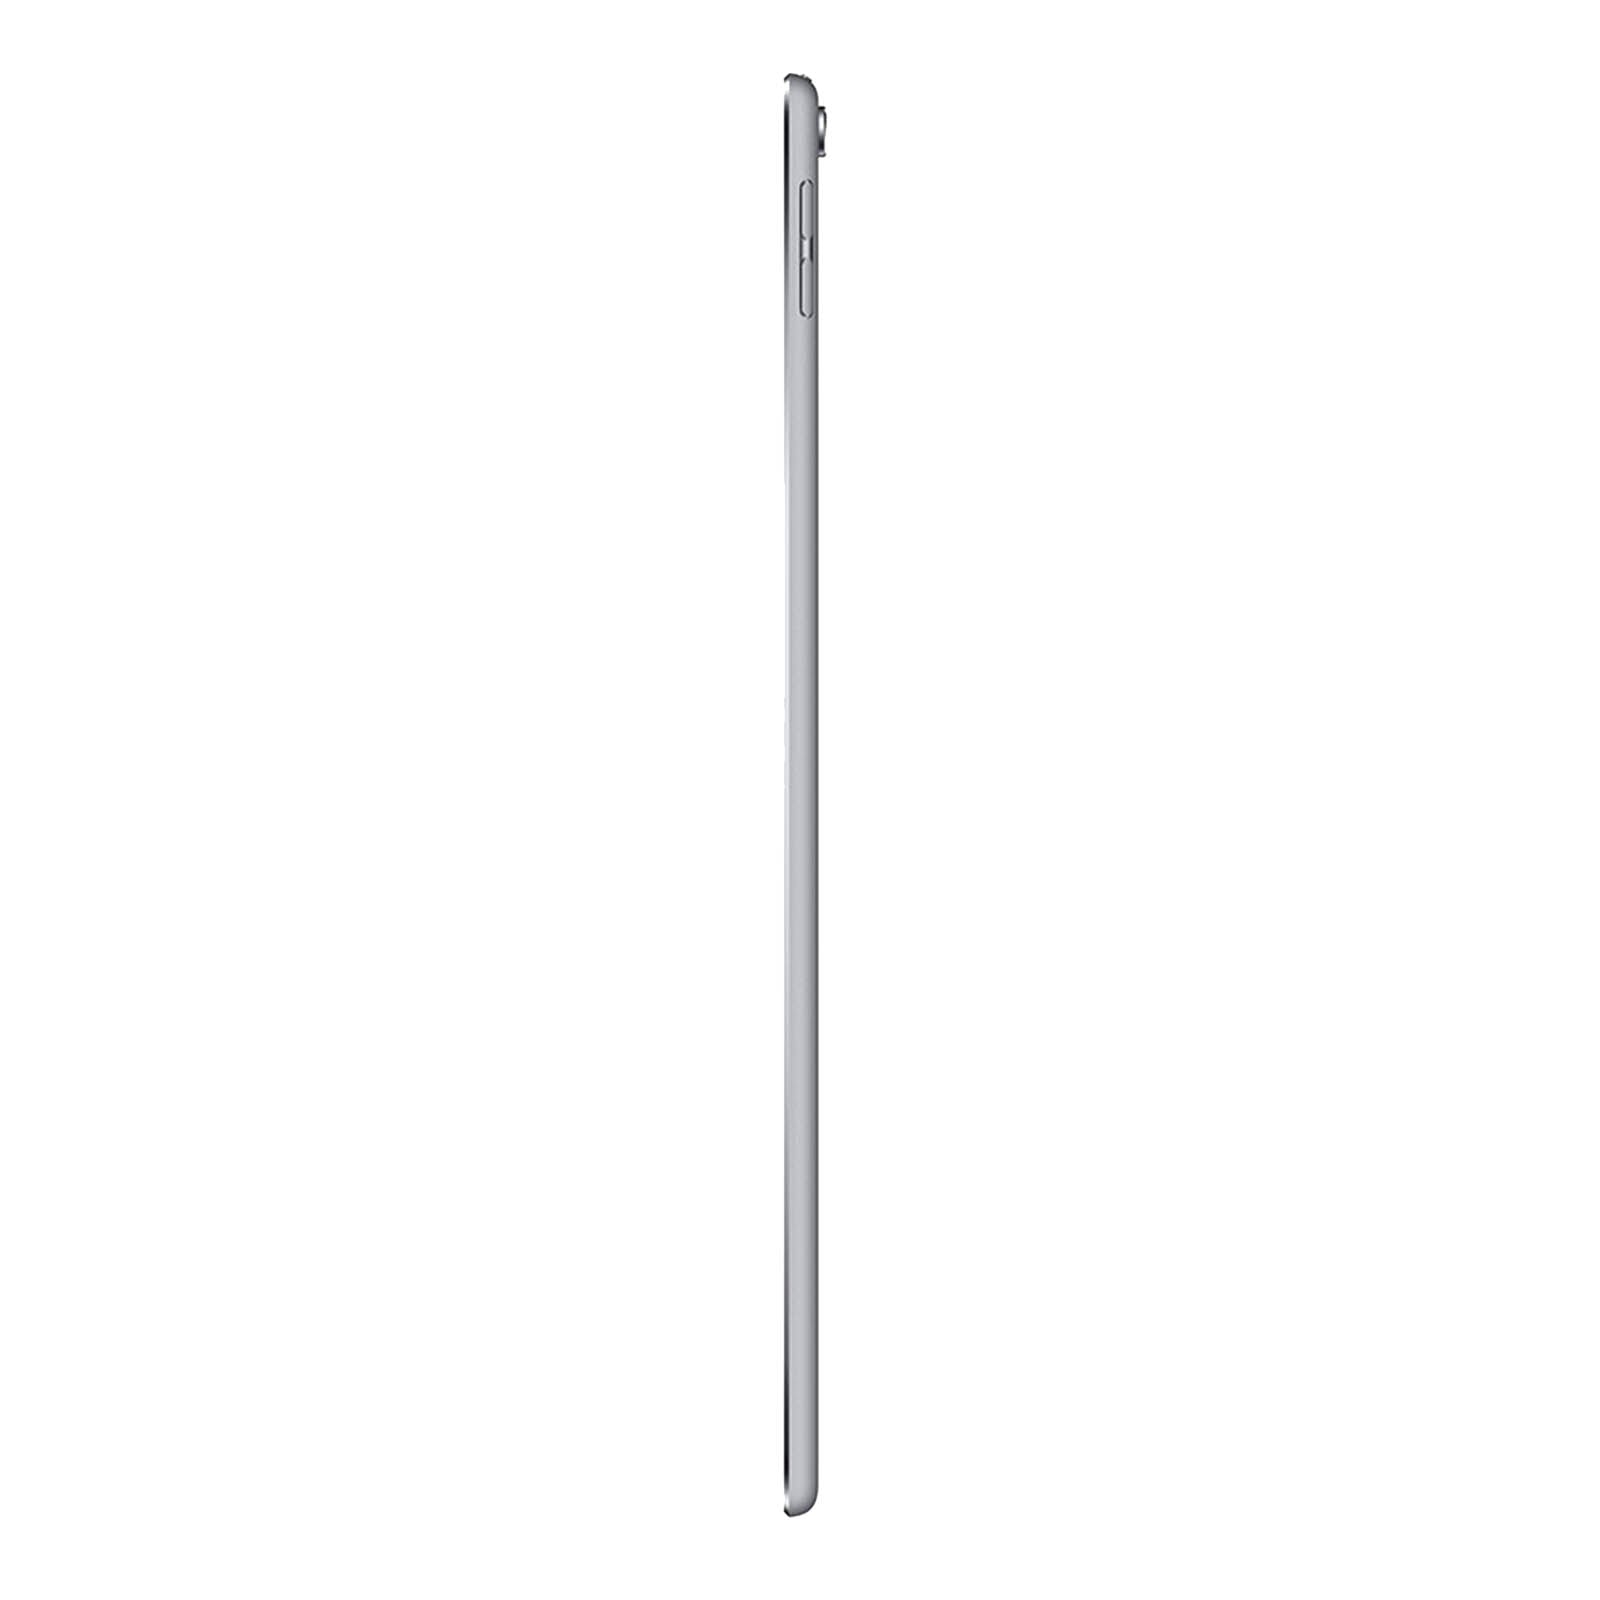 iPad Pro 10.5 Inch 64GB Space Grey Good - WiFi